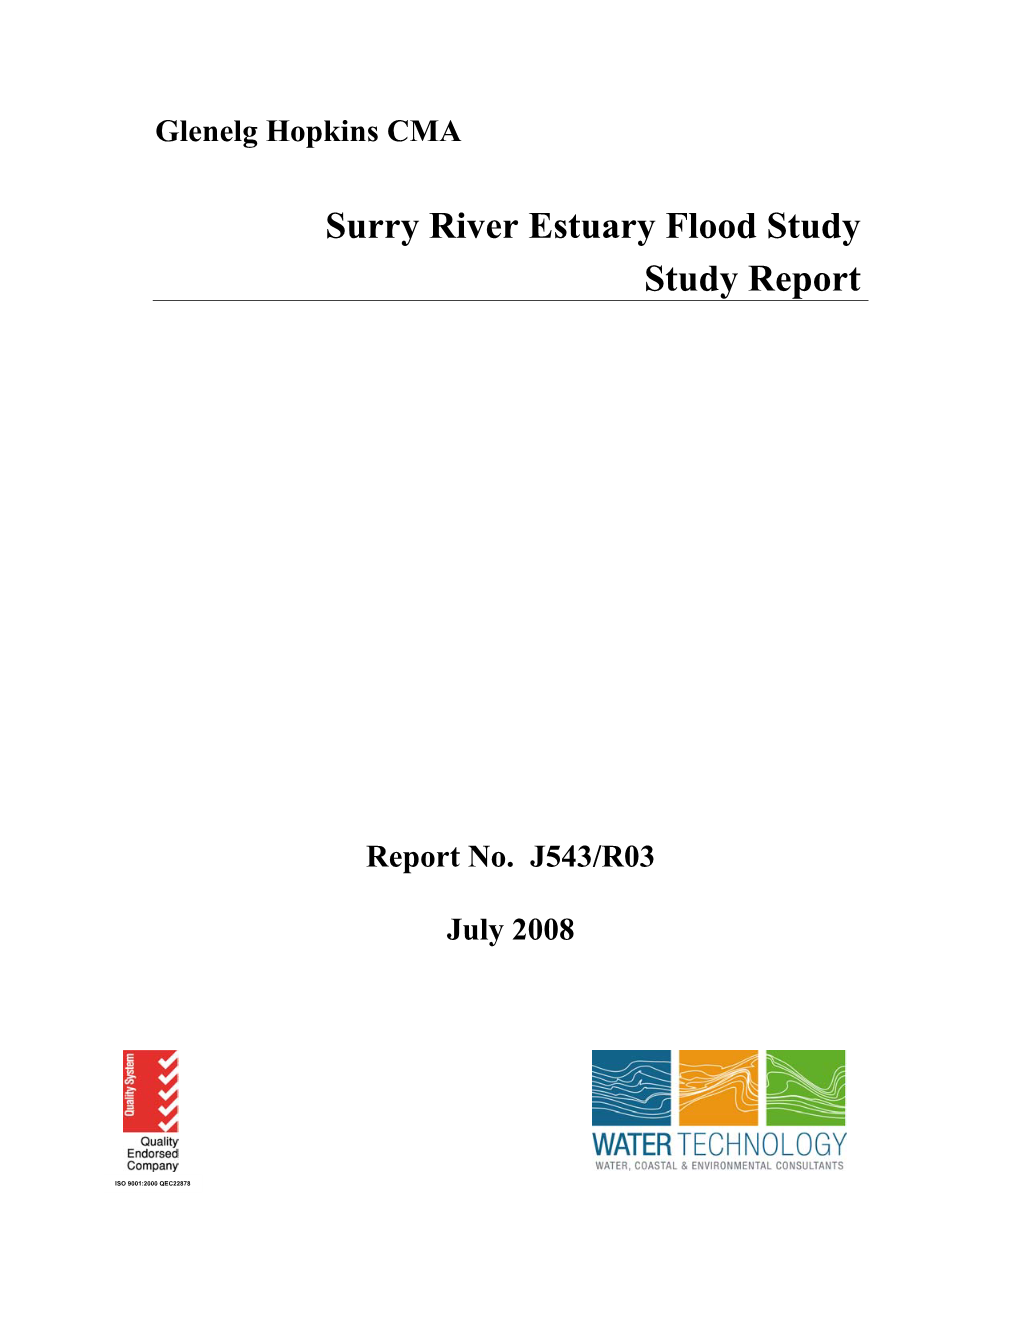 Surry River Estuary Flood Study Study Report